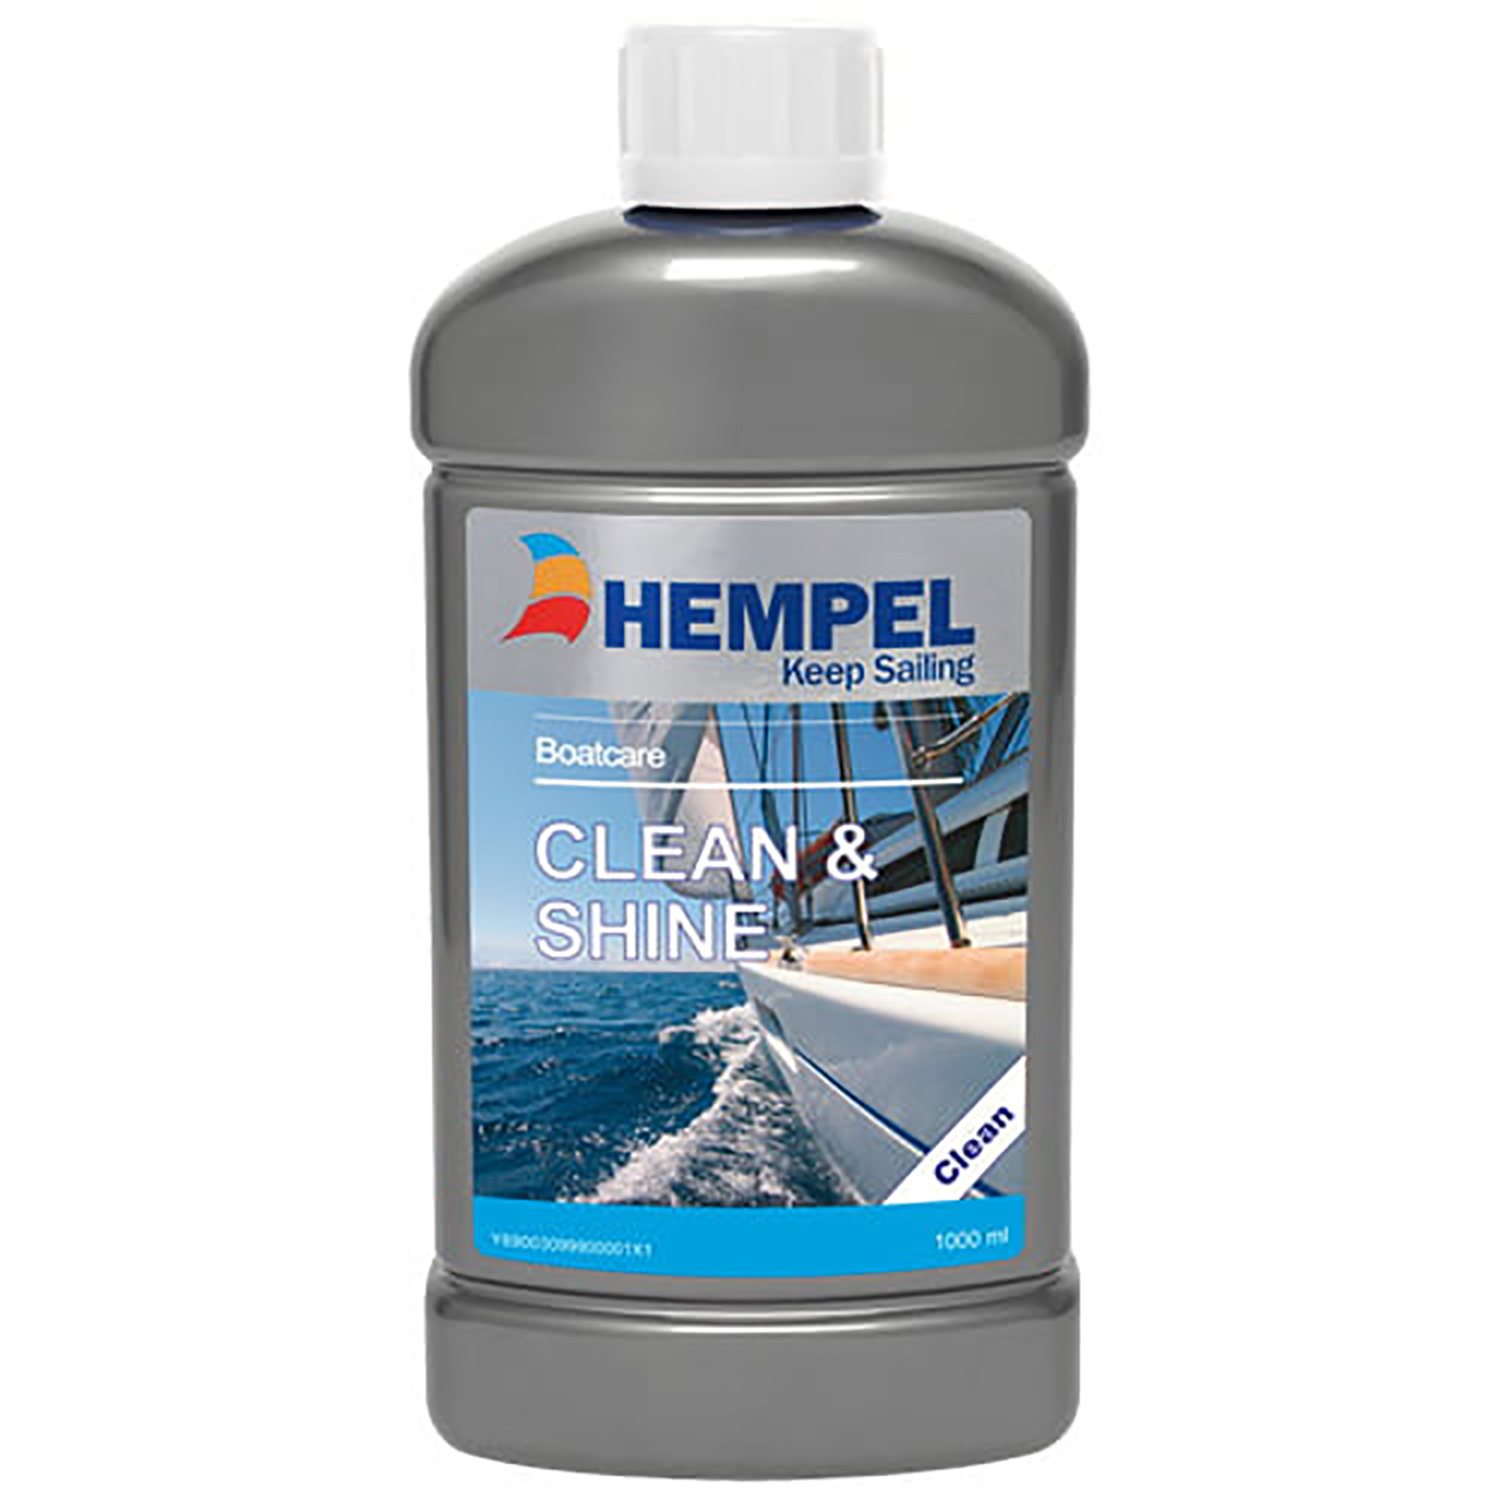 Паста полировальная Hempel Clean & Shine 69003 для удаления грязи 1л